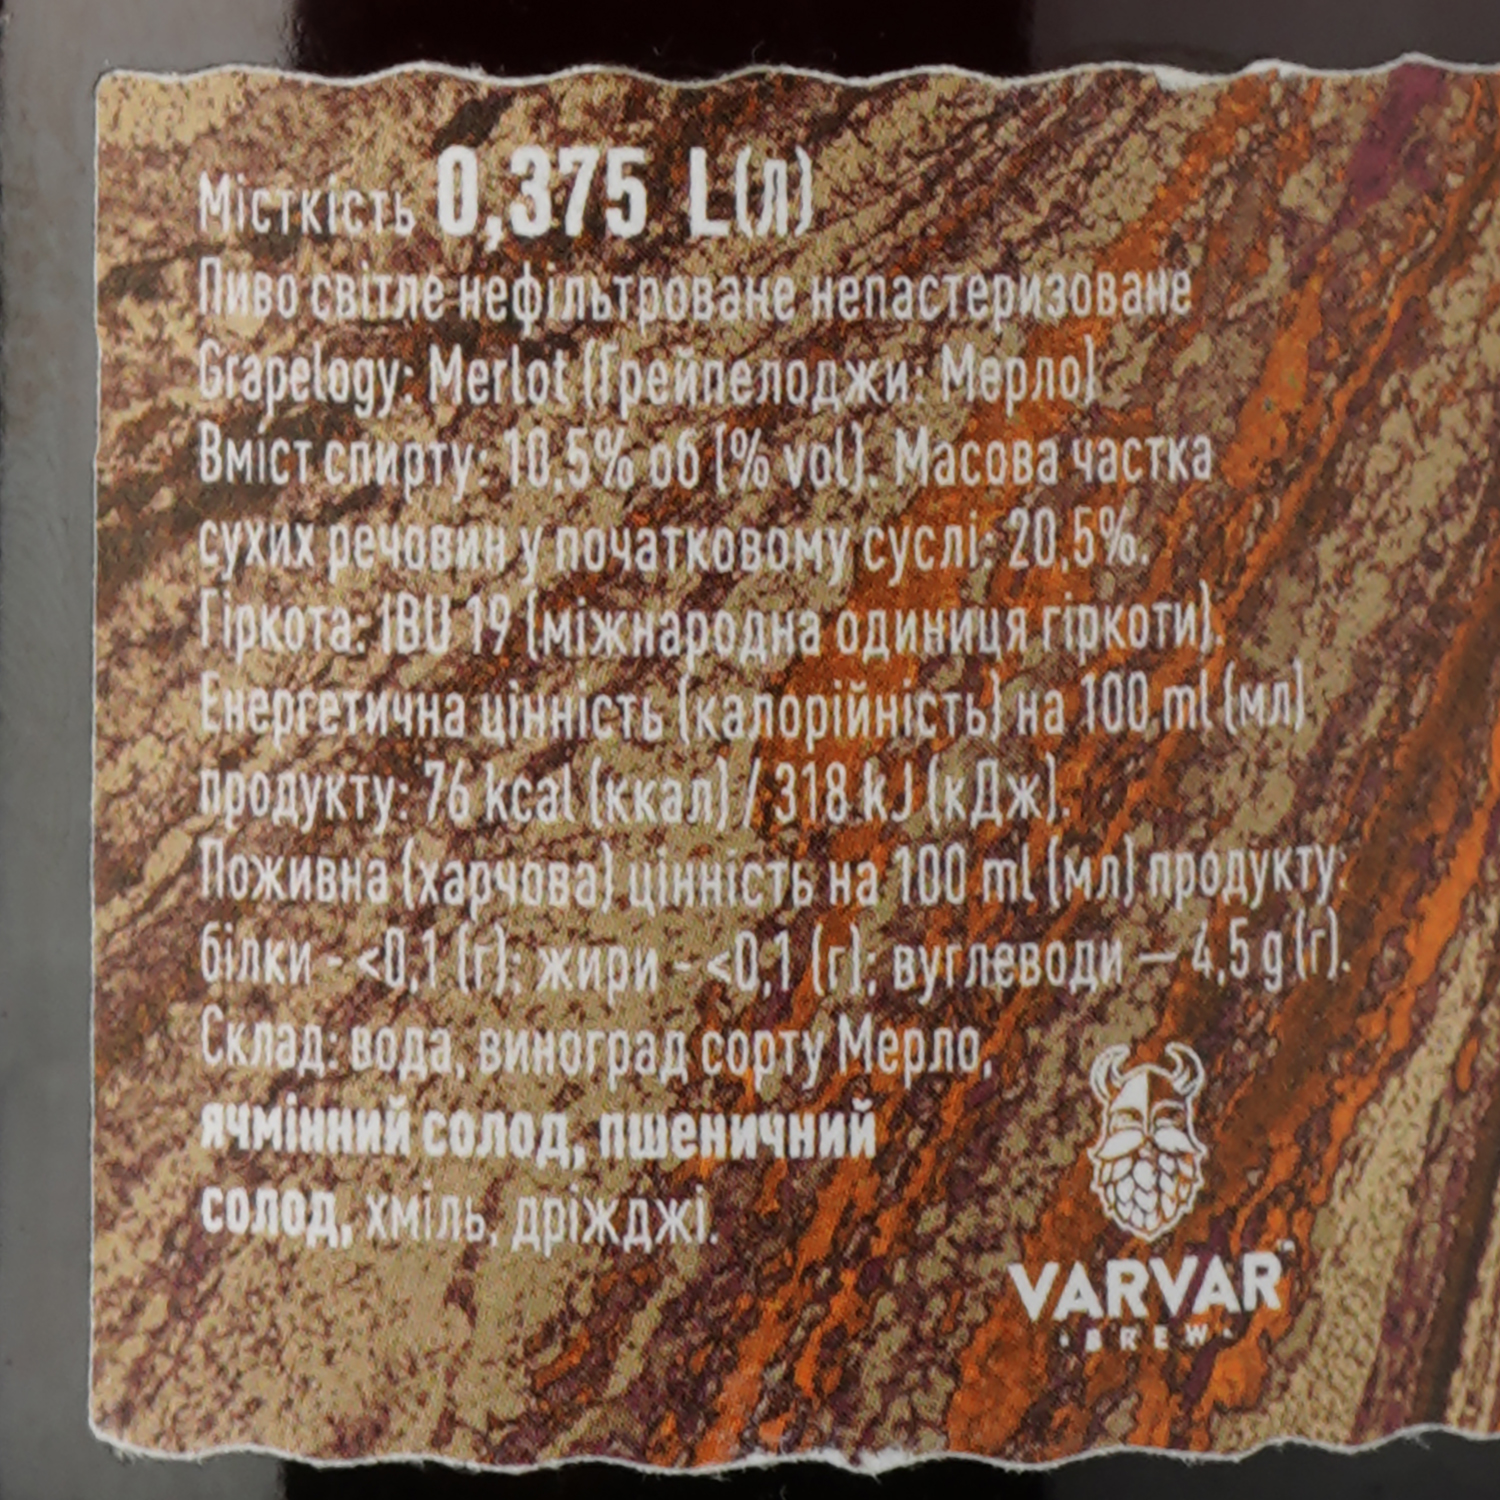 Пиво Varvar Grapelogy Merlot, темное, 10,5%, 0,375 л - фото 5